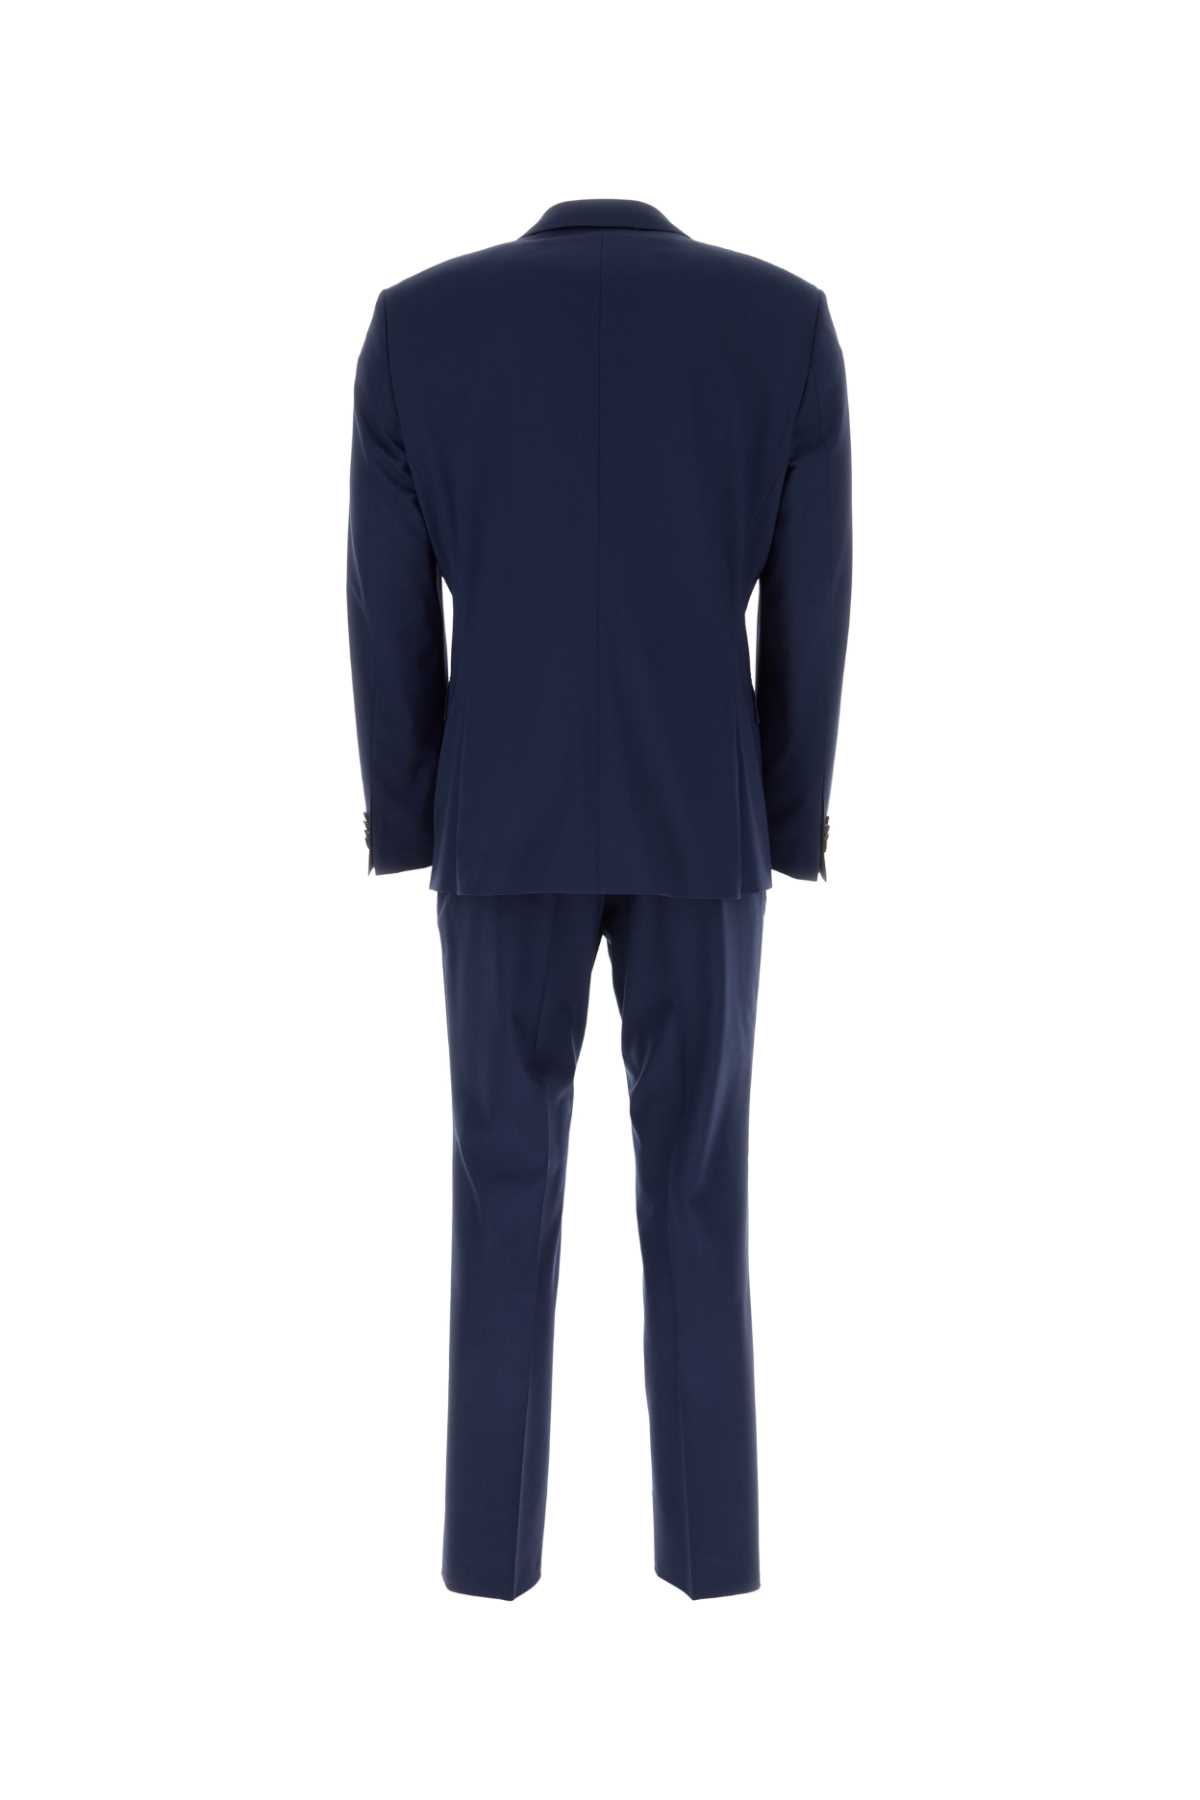 Hugo Boss Blue Stretch Wool Suit In Openblue